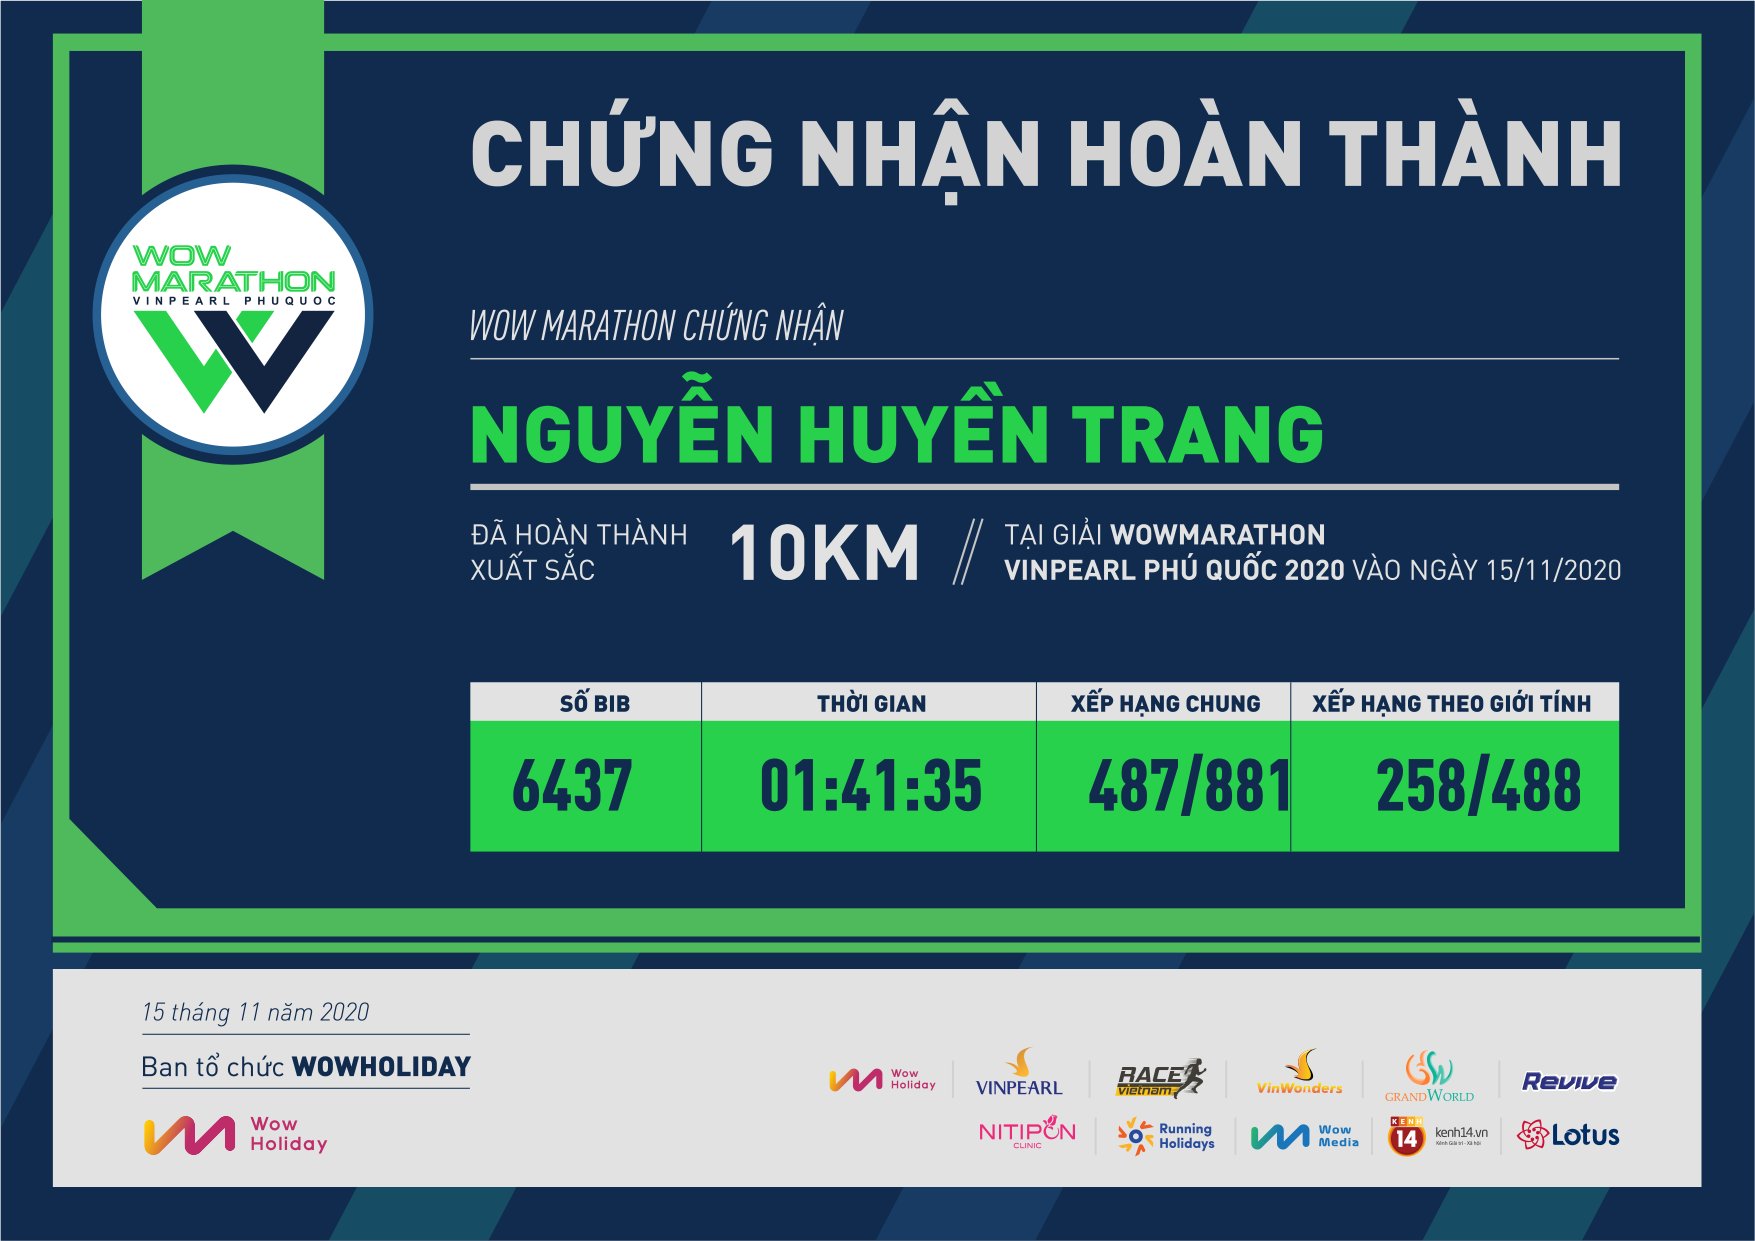 6437 - Nguyễn Huyền Trang